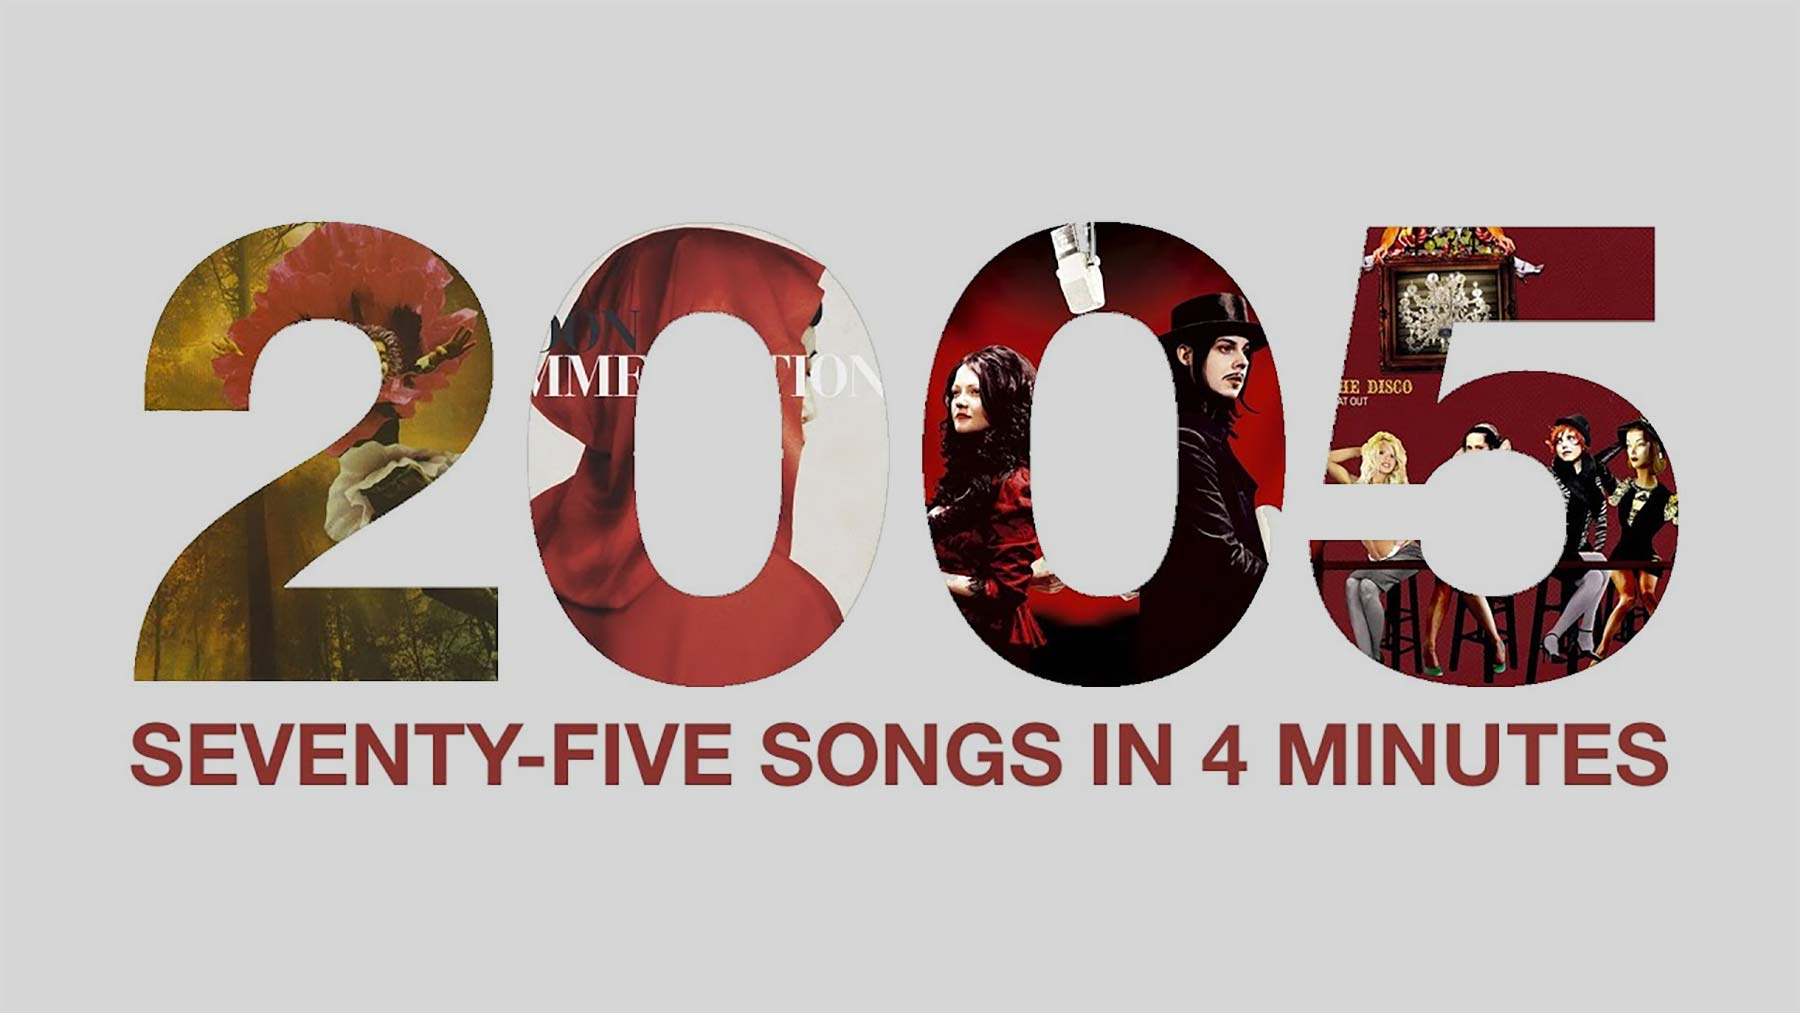 Die 75 besten Lieder des Jahres 2005 im 4-Minuten-Mashup